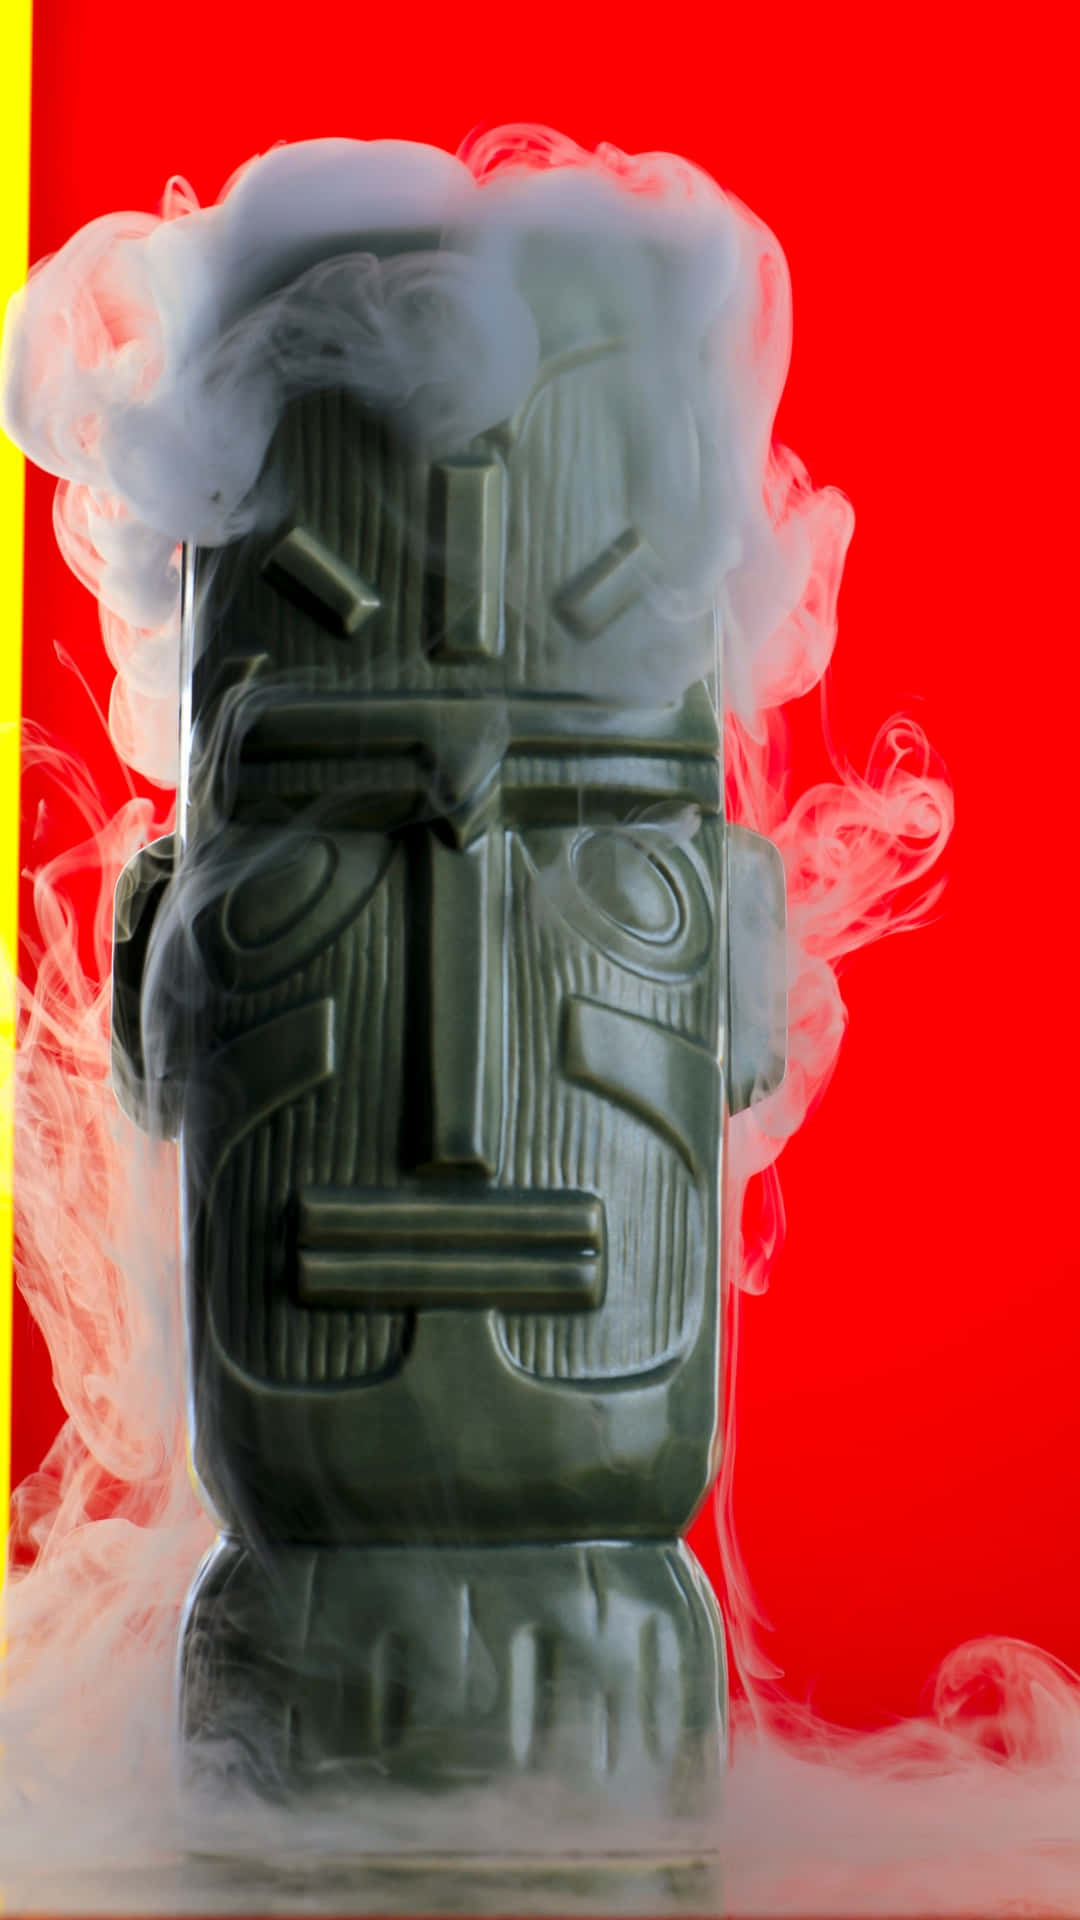 Mystical Smoking Tiki Statue Wallpaper